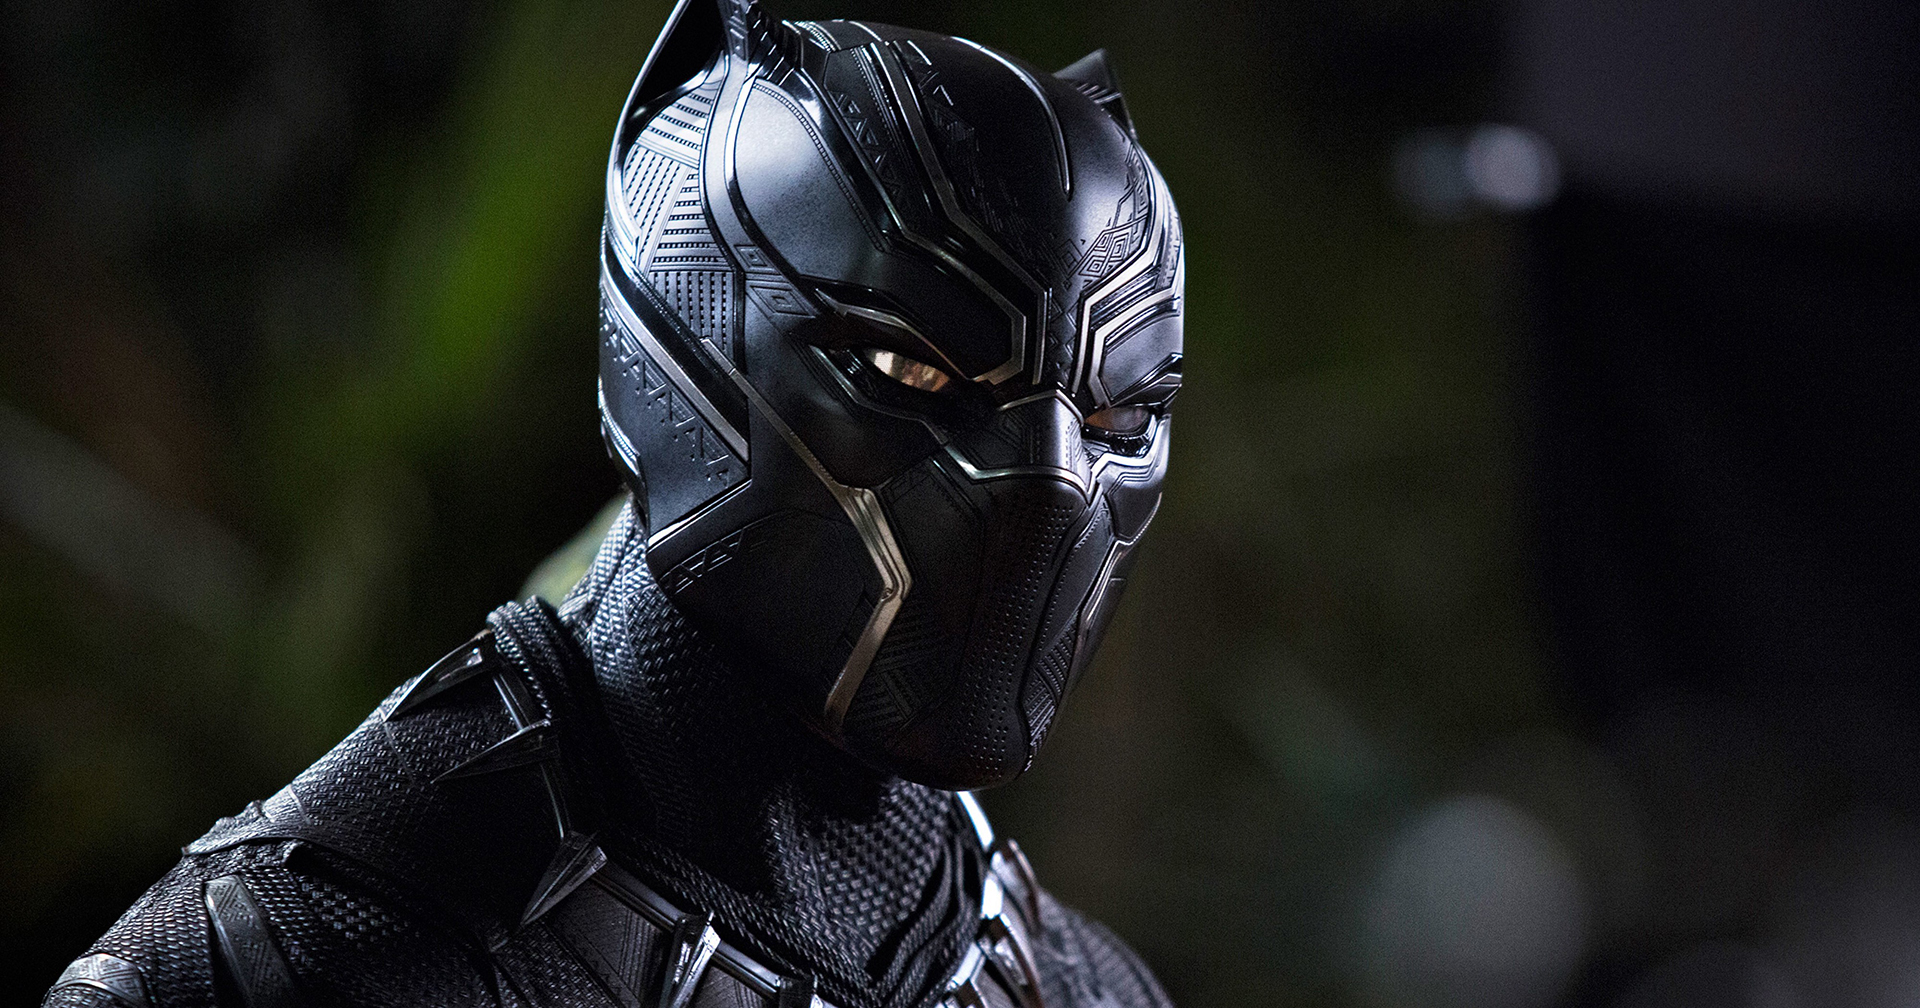 นักแสดงใน Black Panther: Wakanda Forever เผย บทยังโดนแก้อยู่ แม้จะเริ่มถ่ายทำแล้วก็ตาม